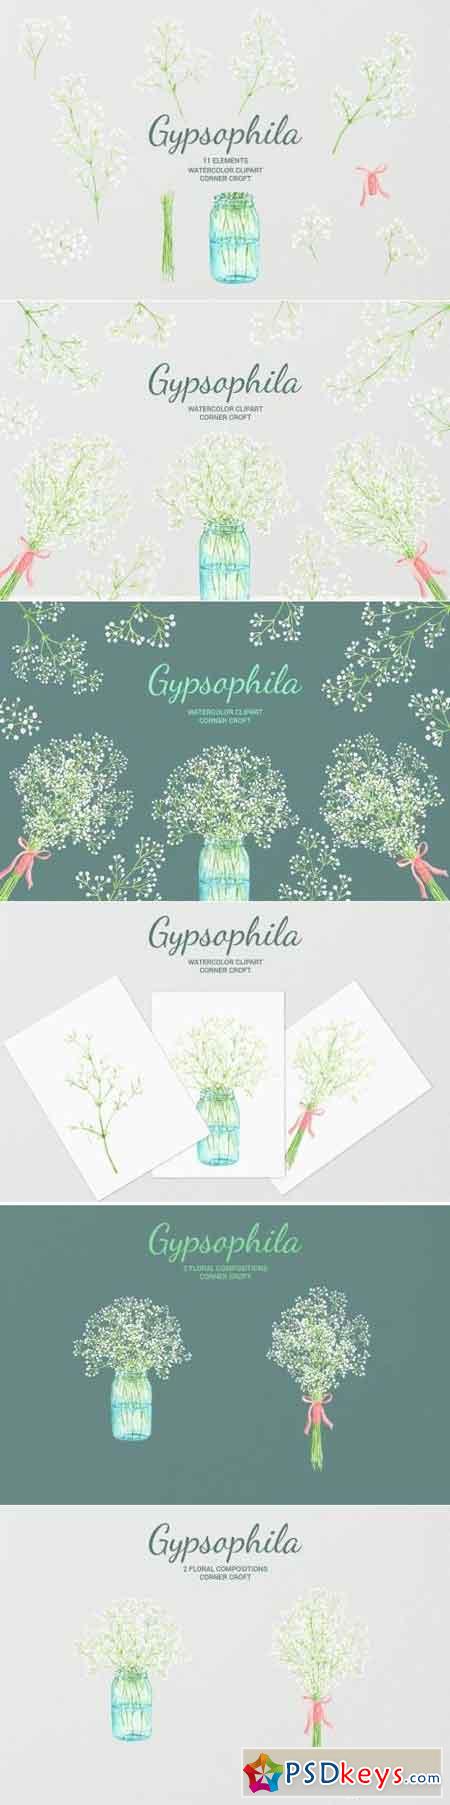 Watercolor Gypsophila Baby's-breath Illustration